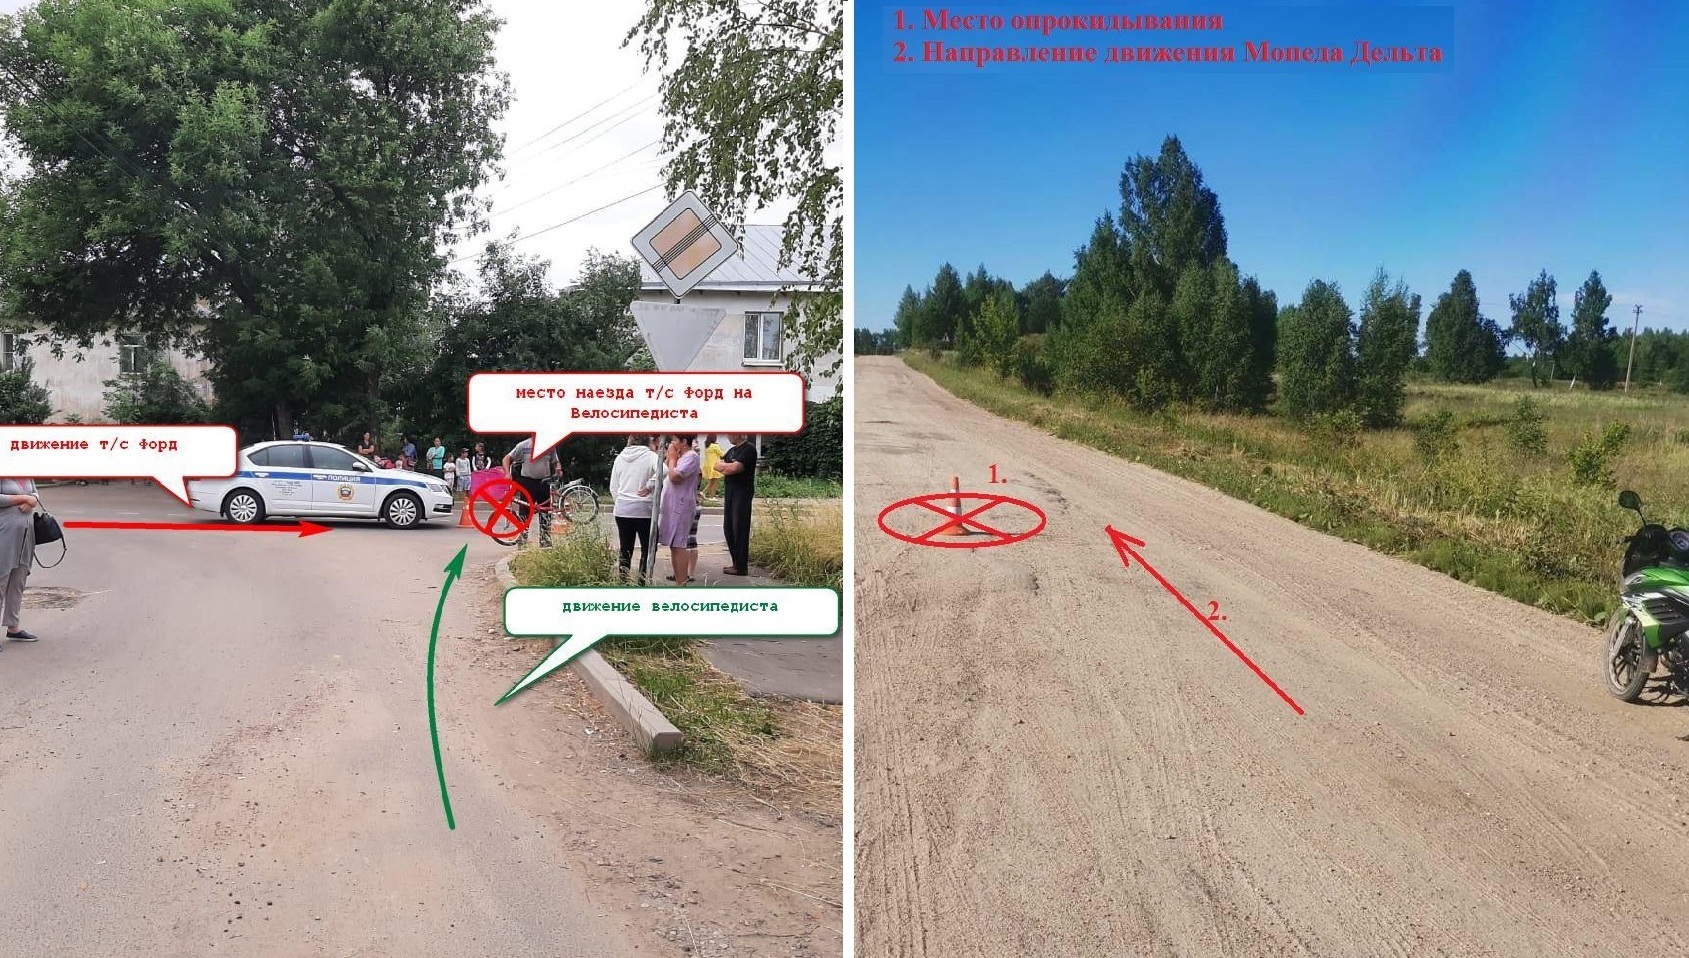 Двое детей на двухколёсном транспорте пострадали в выходные в Костромской области